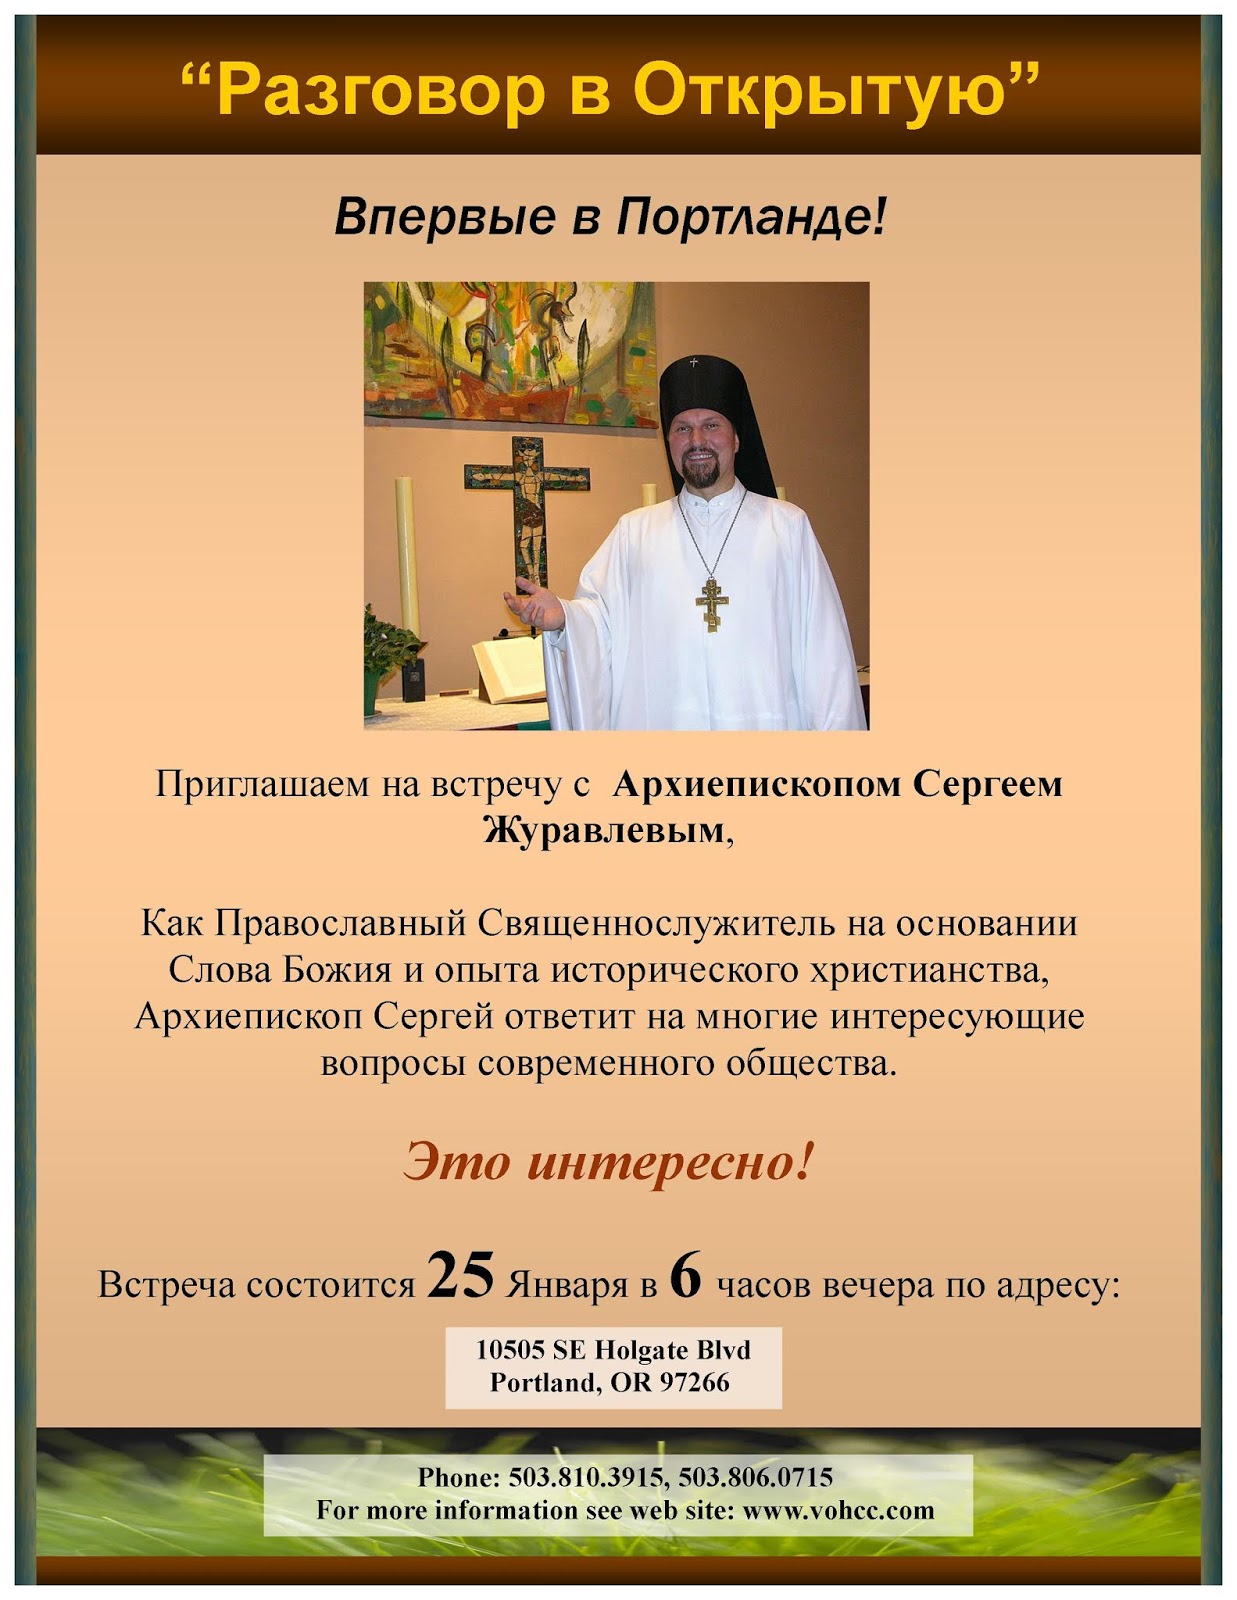 Вопрос священнику православной. Православные вопросы ответить